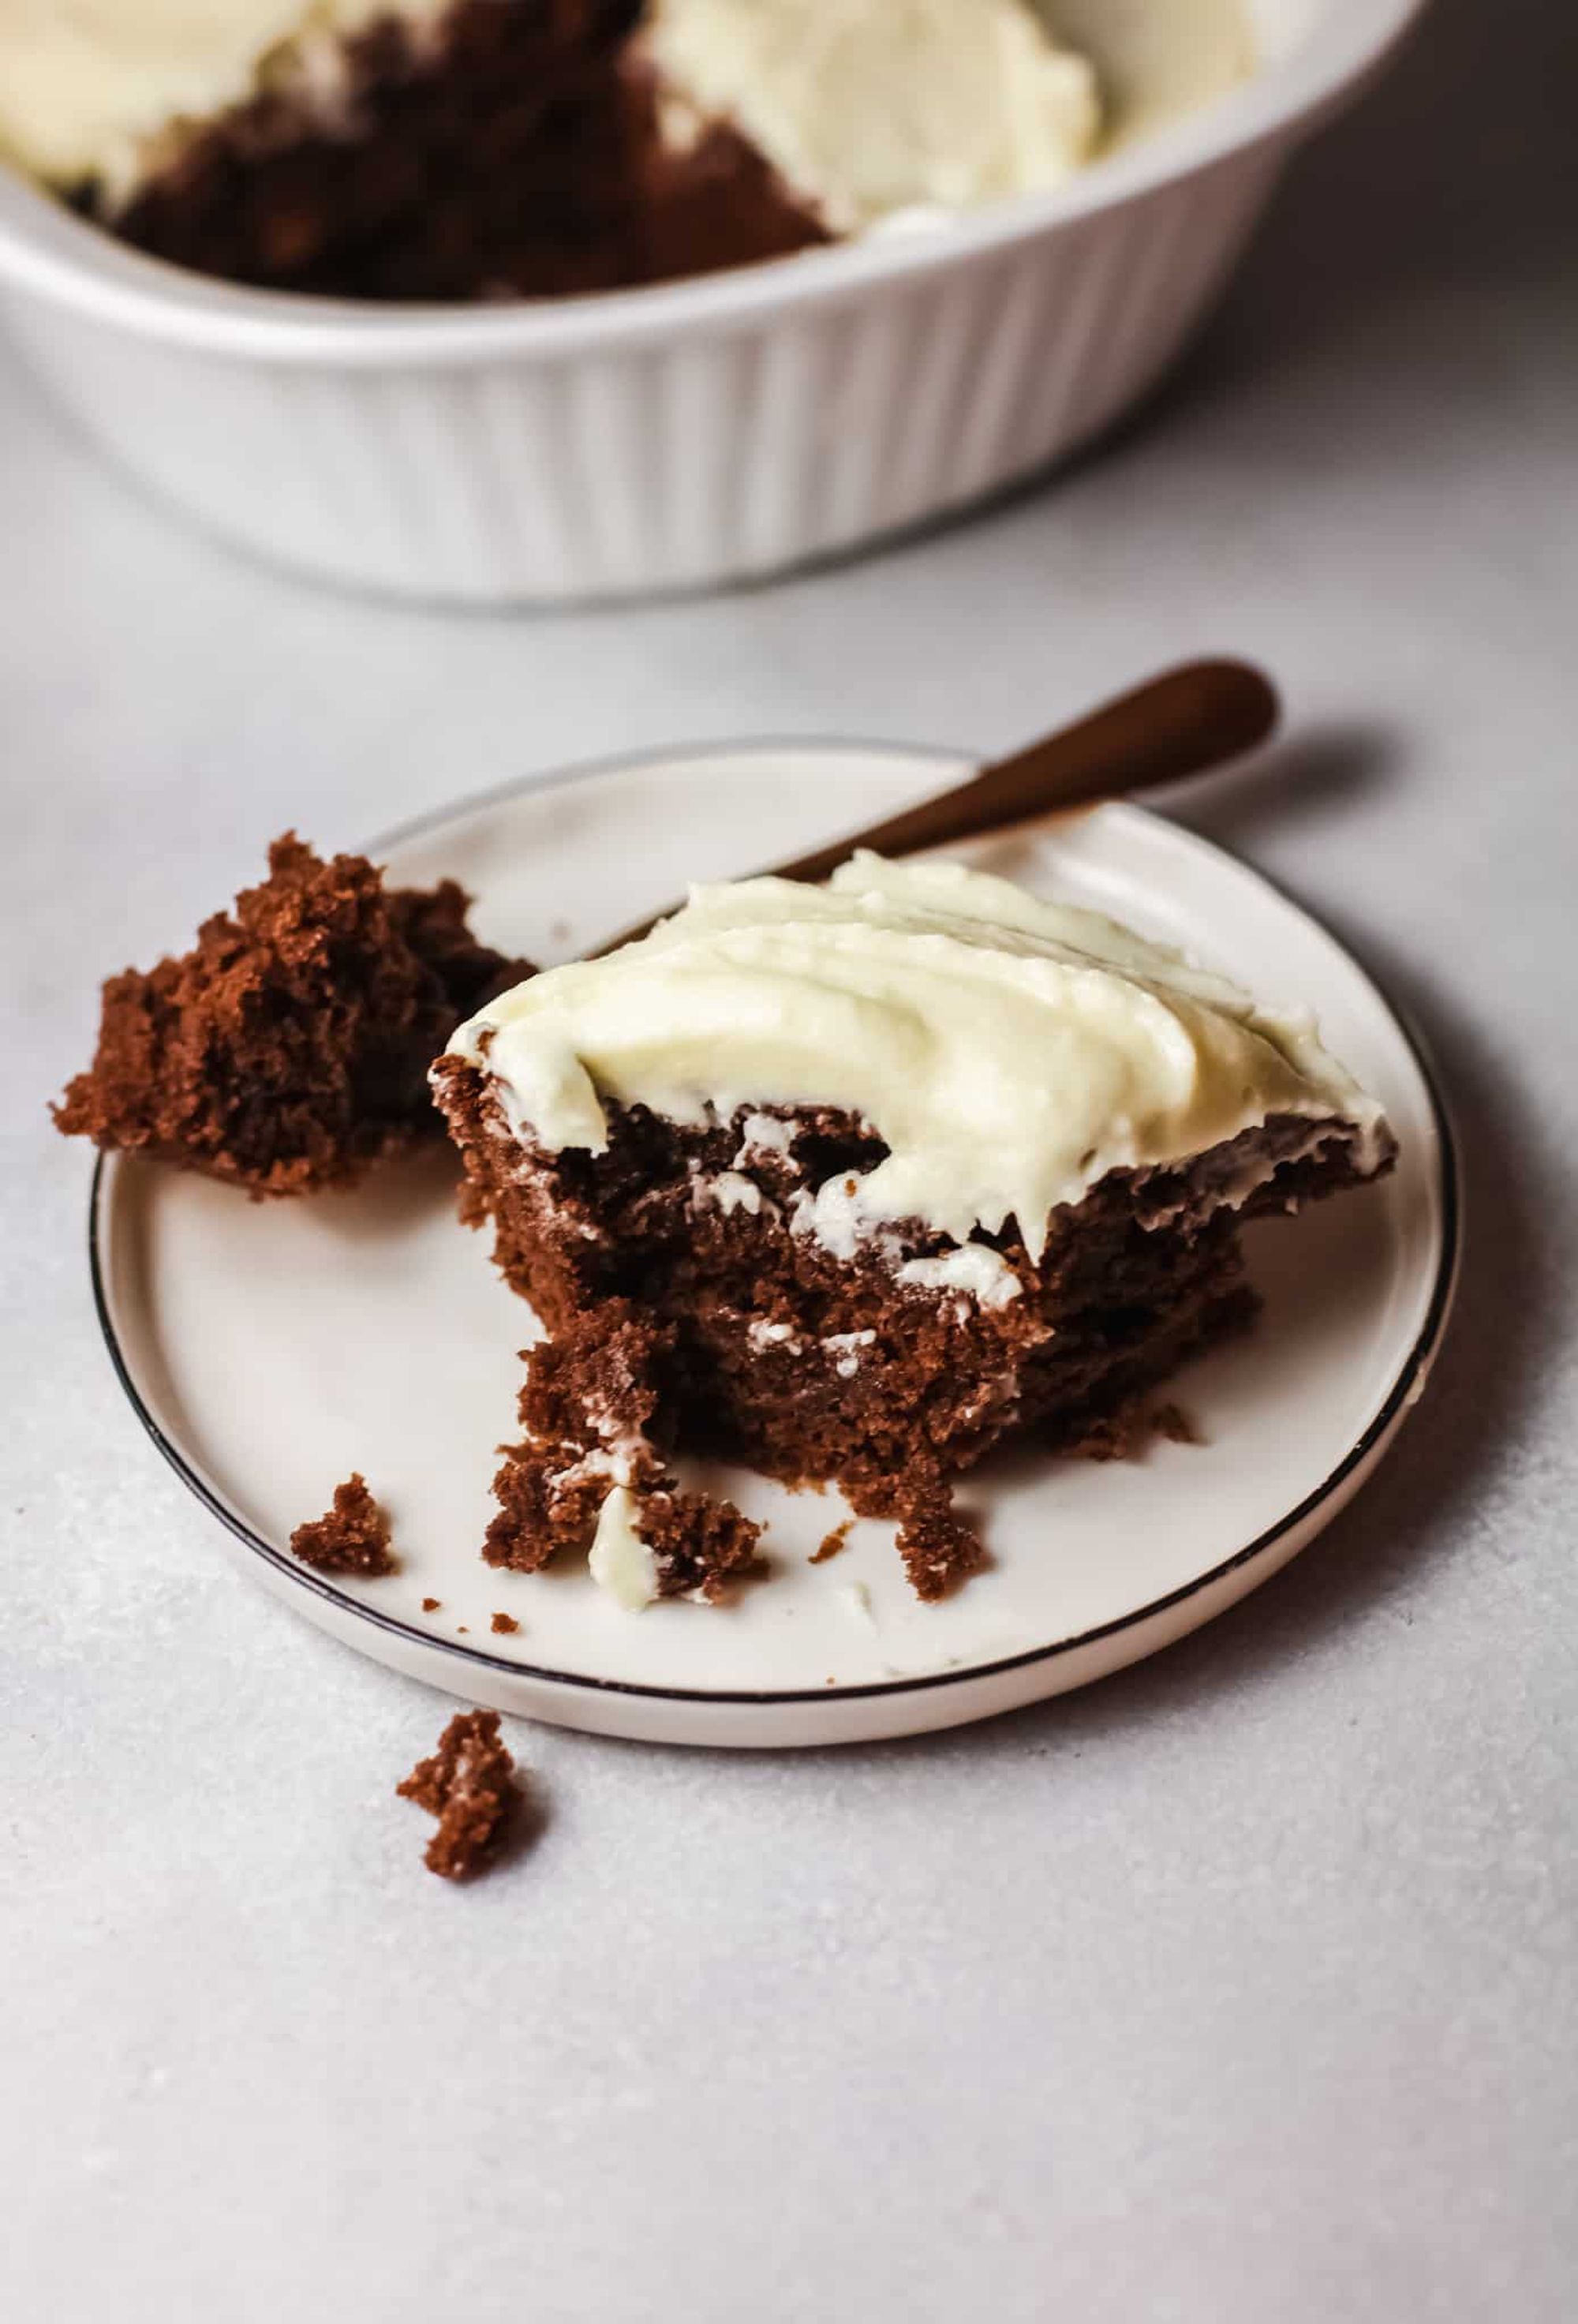 Best Homemade Chocolate Cake Recipe - My Recipe Magic